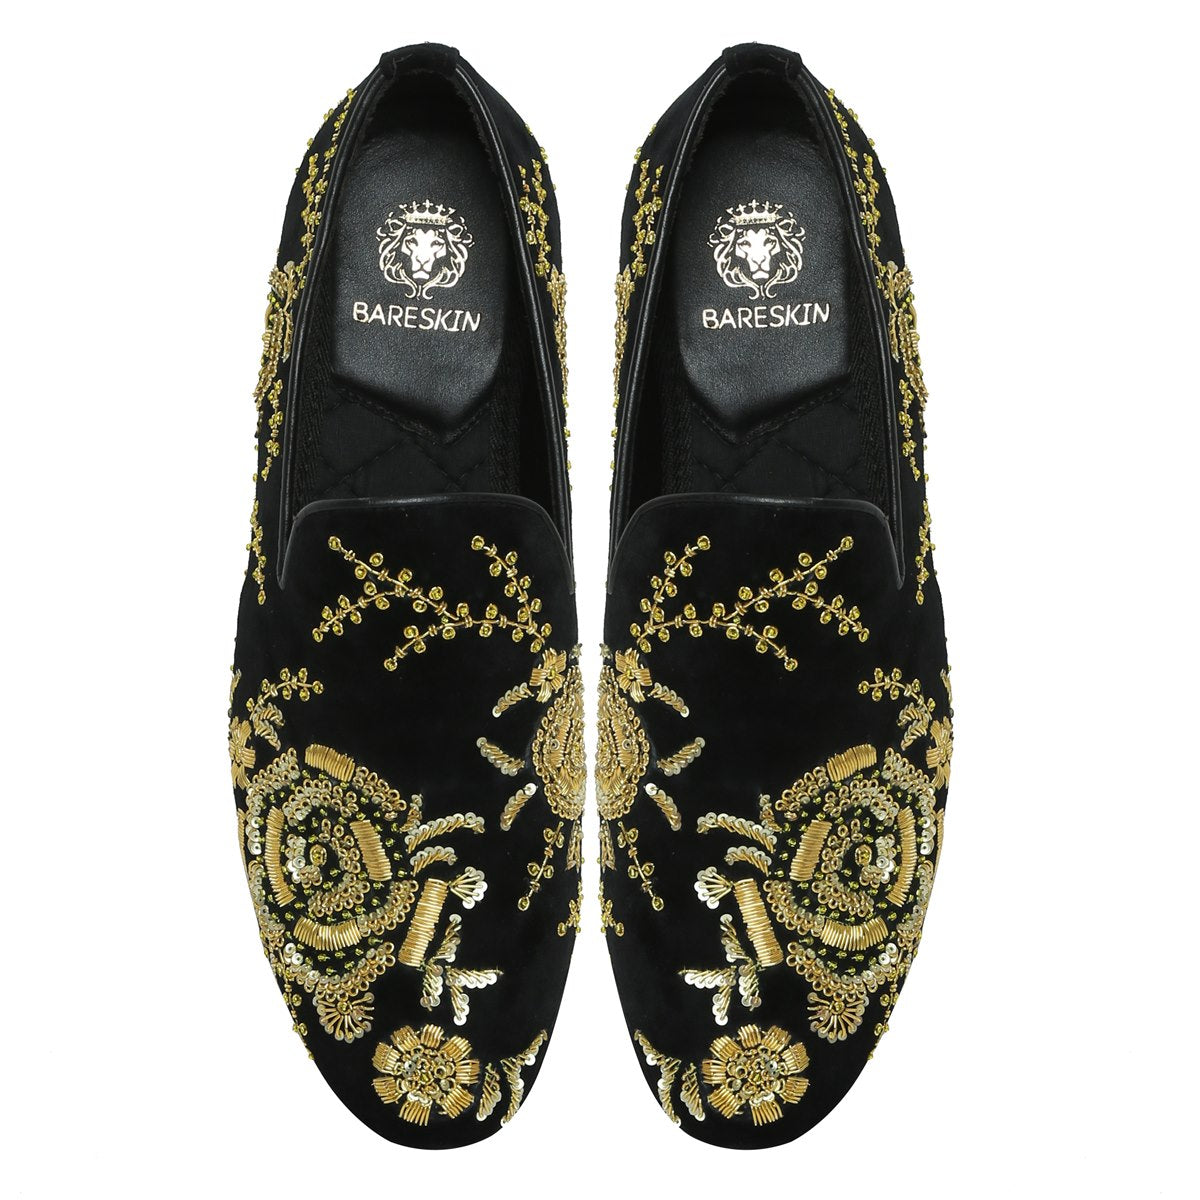 Zardosi Embroidery Slip-On Shoes in Black Velvet By Brune & Bareskin